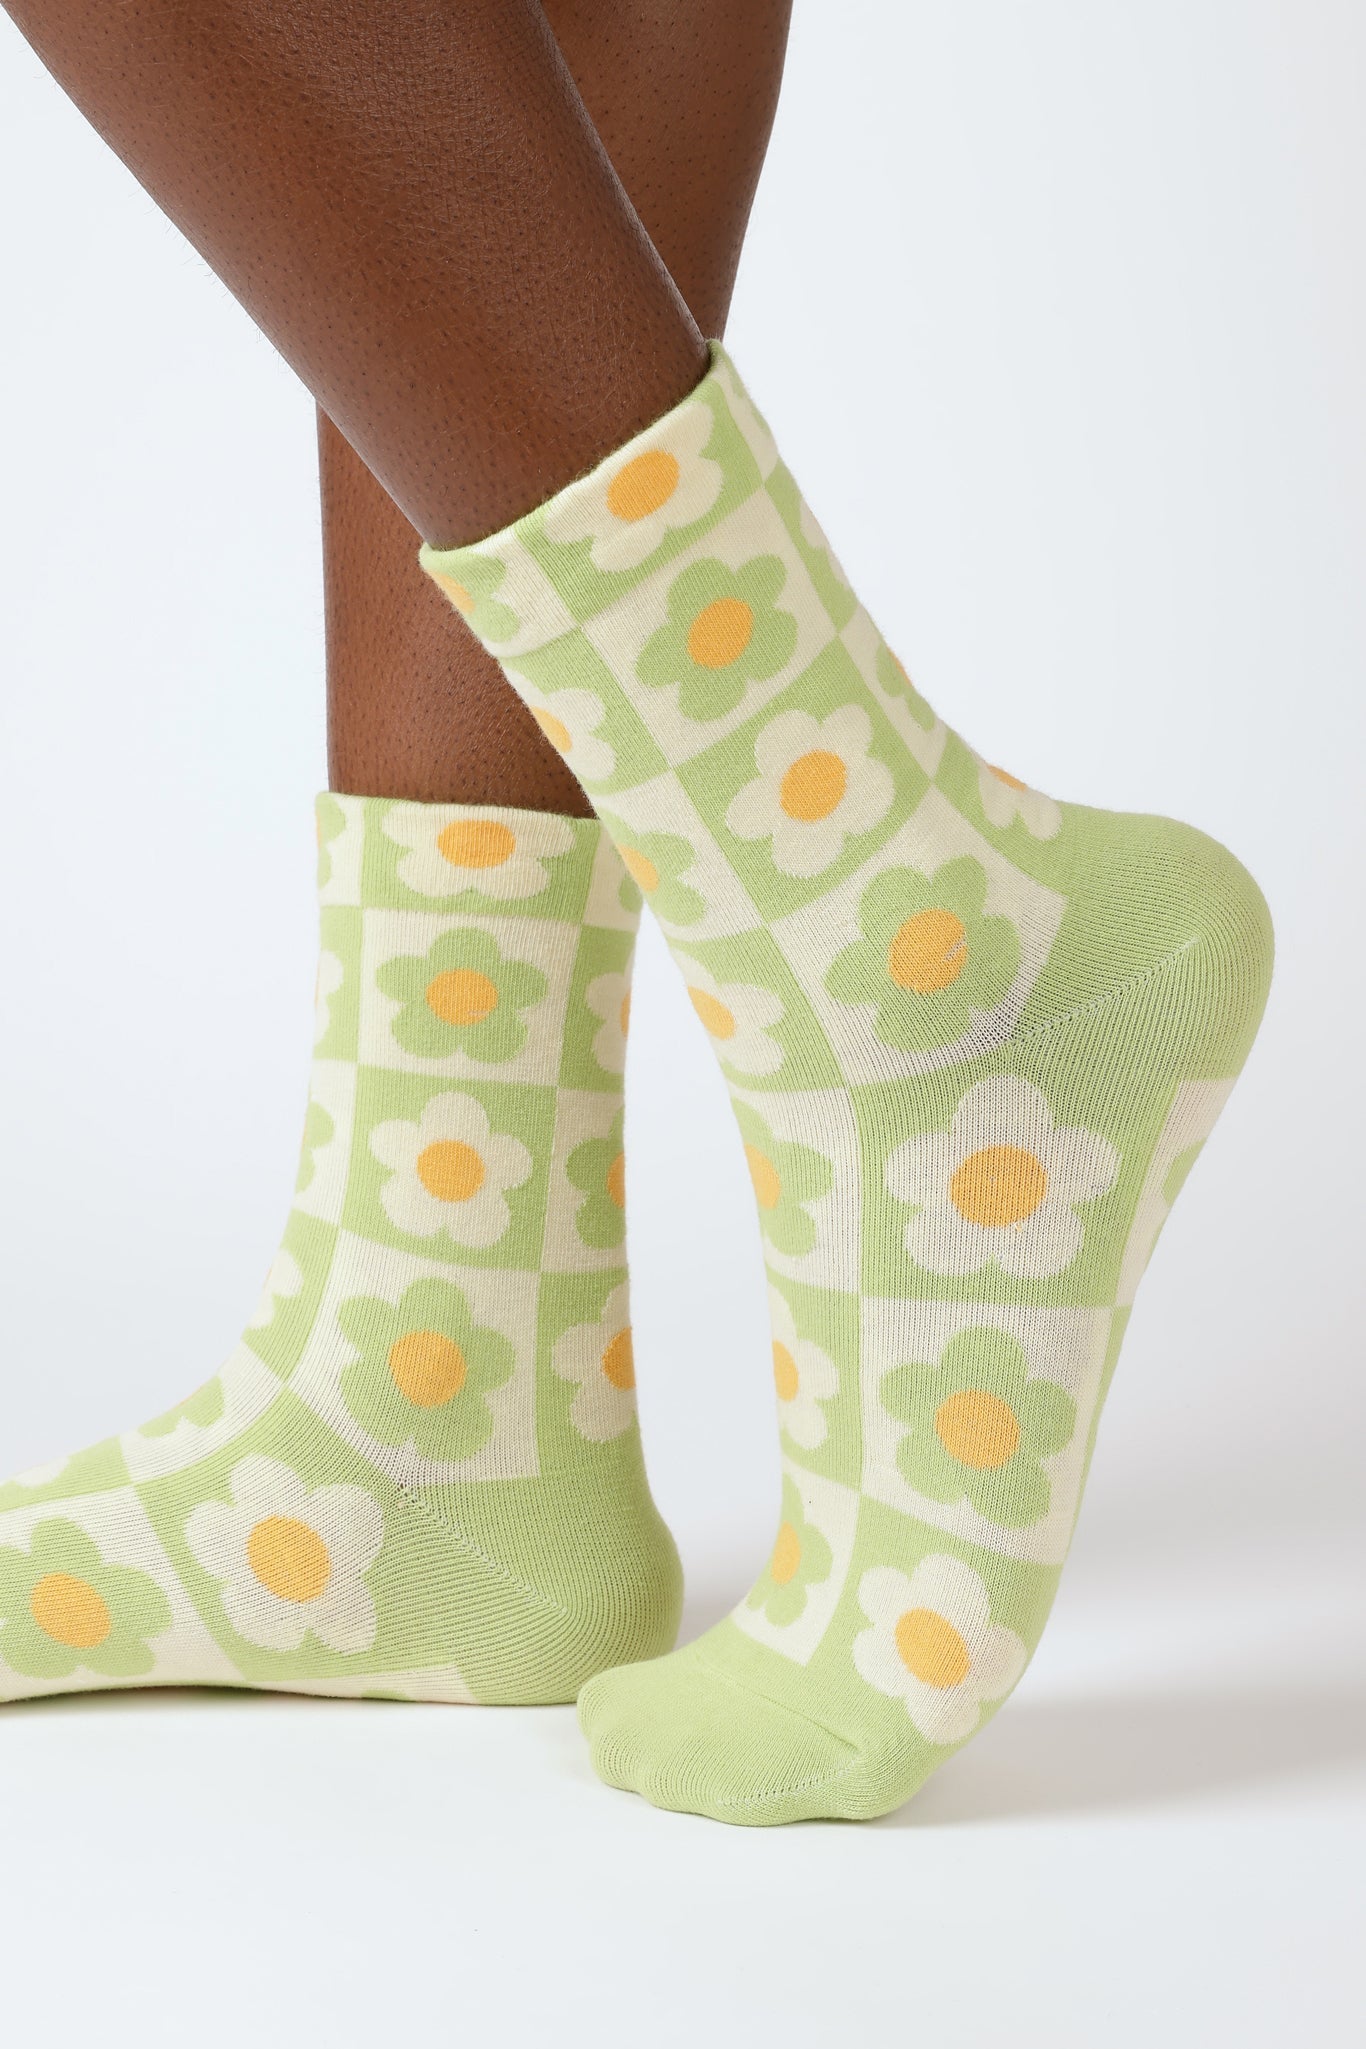 Green daisy checkered socks